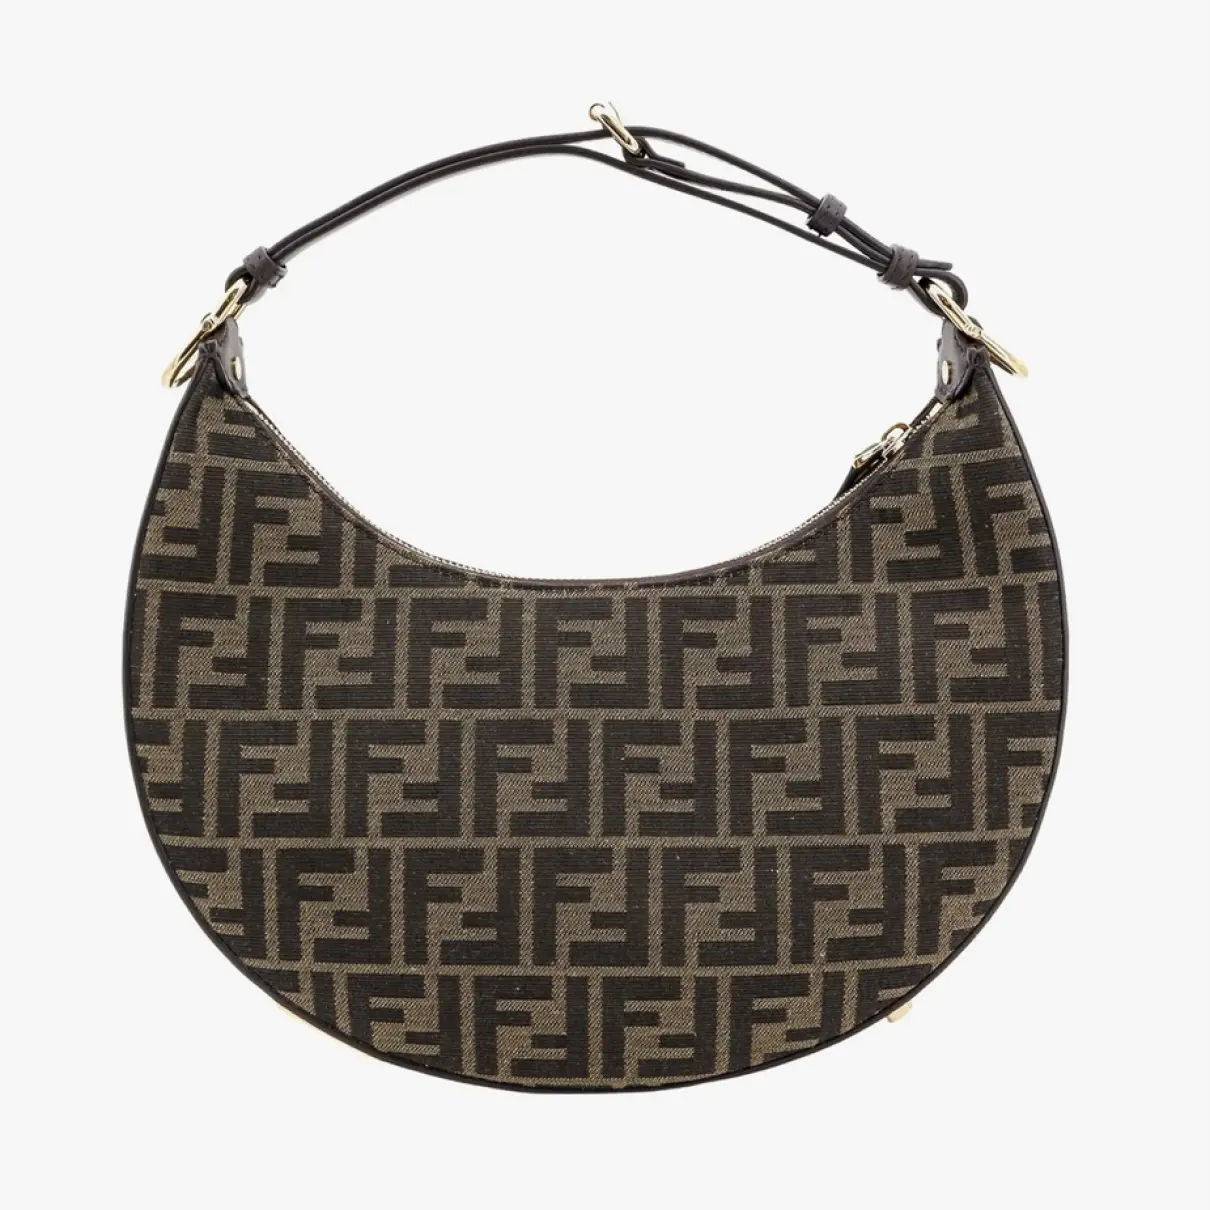 Fendigraphy leather handbag Fendi